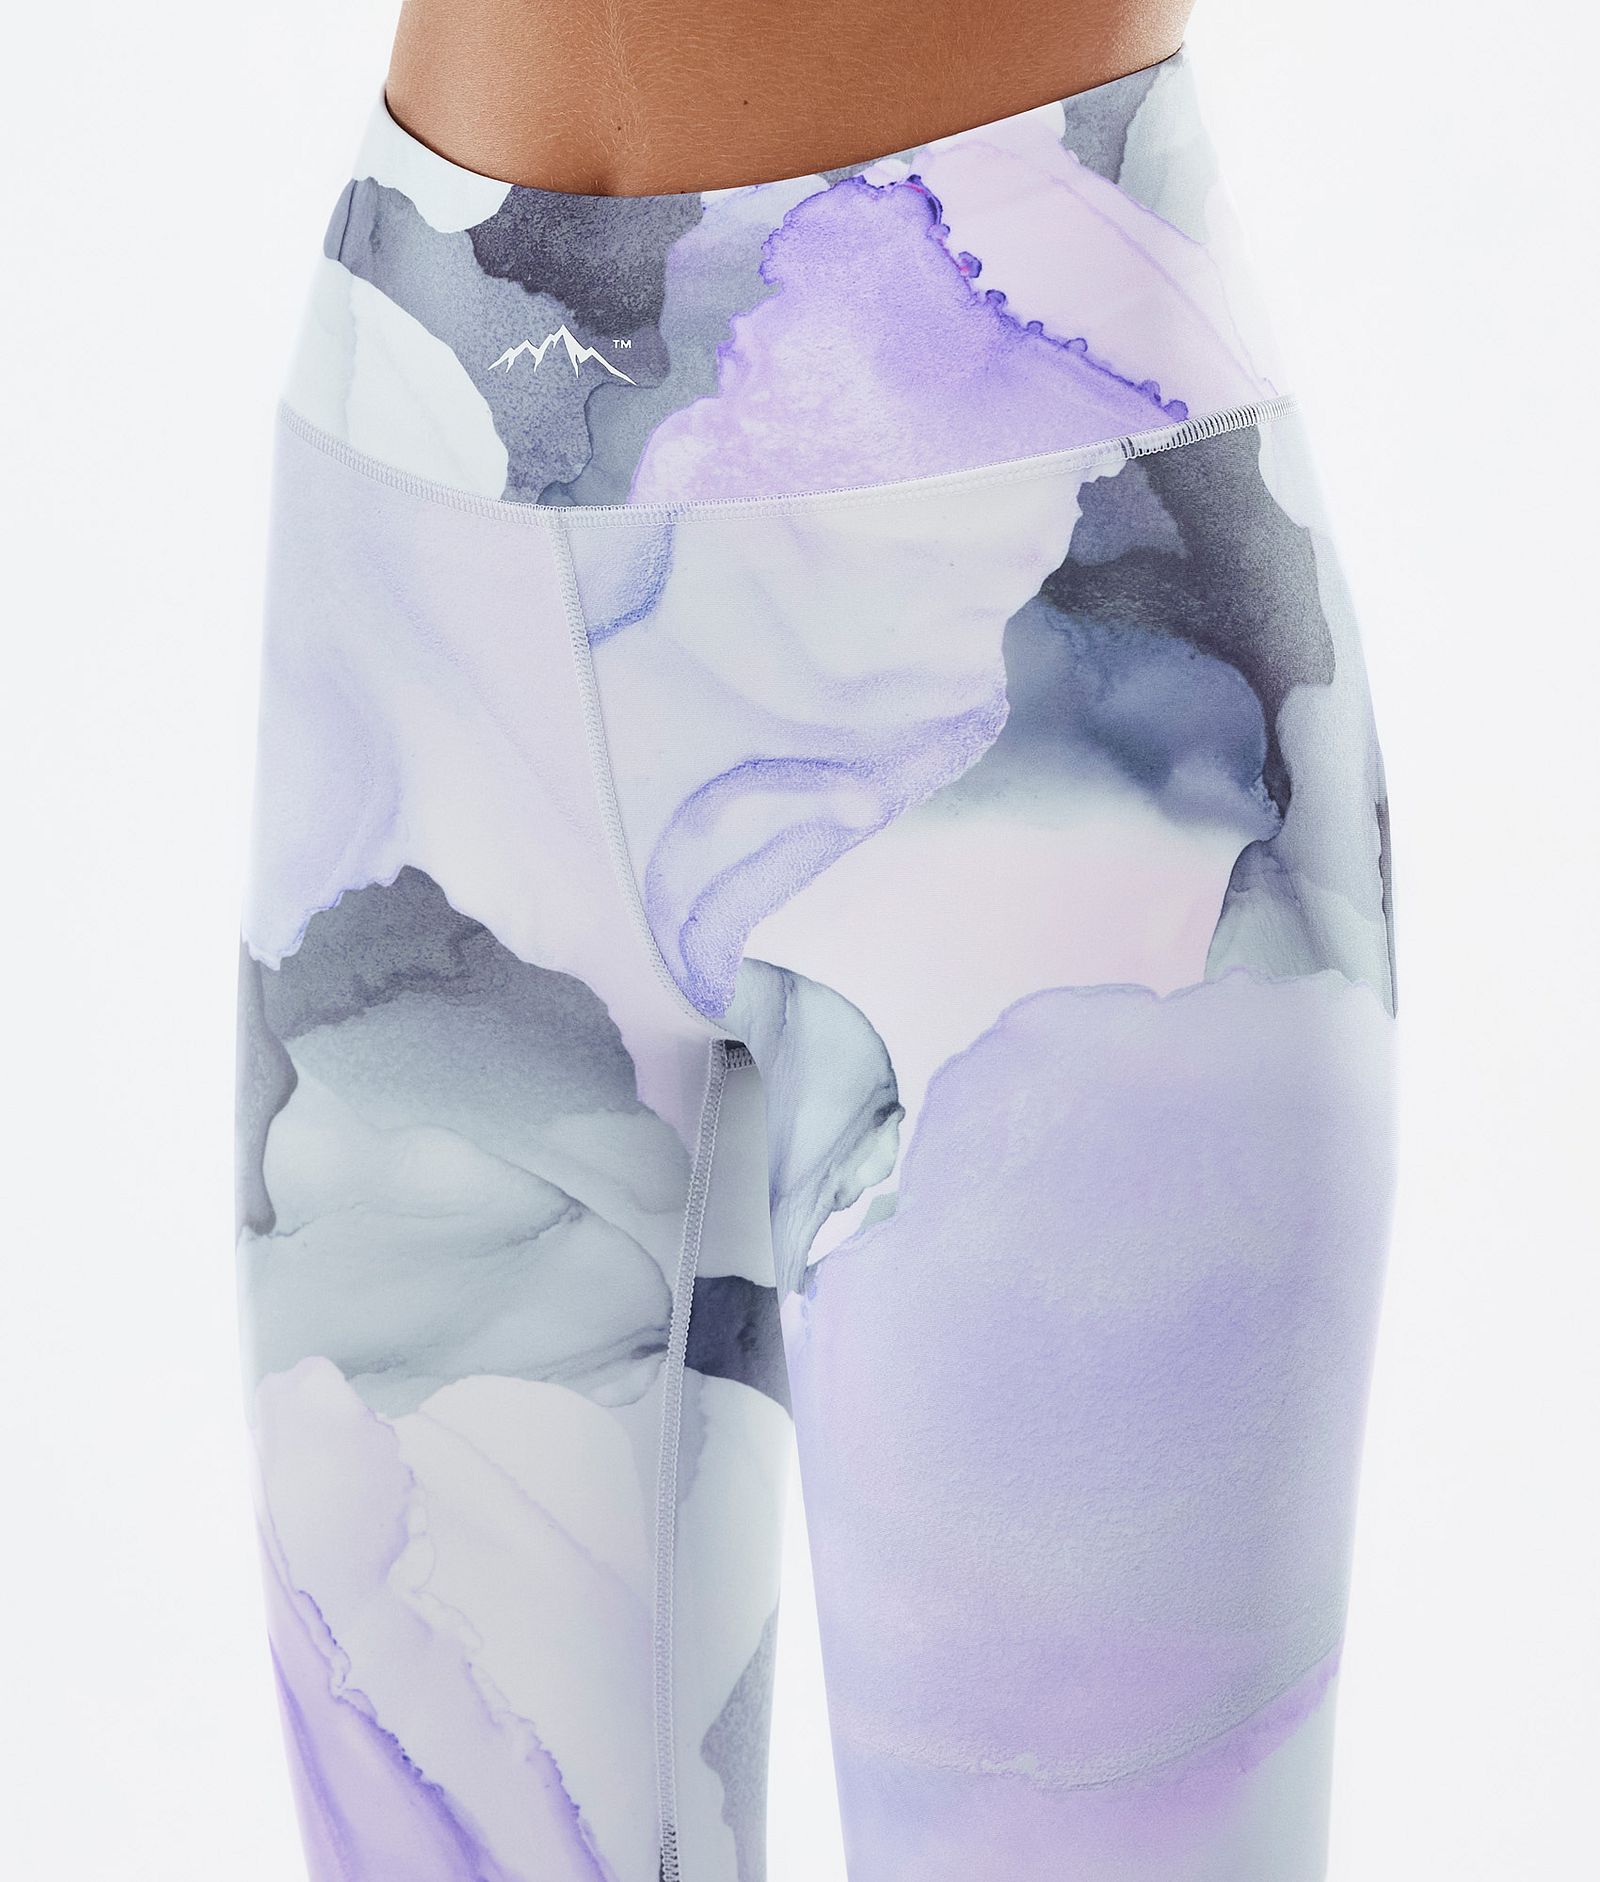 Snuggle W 2022 Pantalon thermique Femme 2X-Up Blot Violet